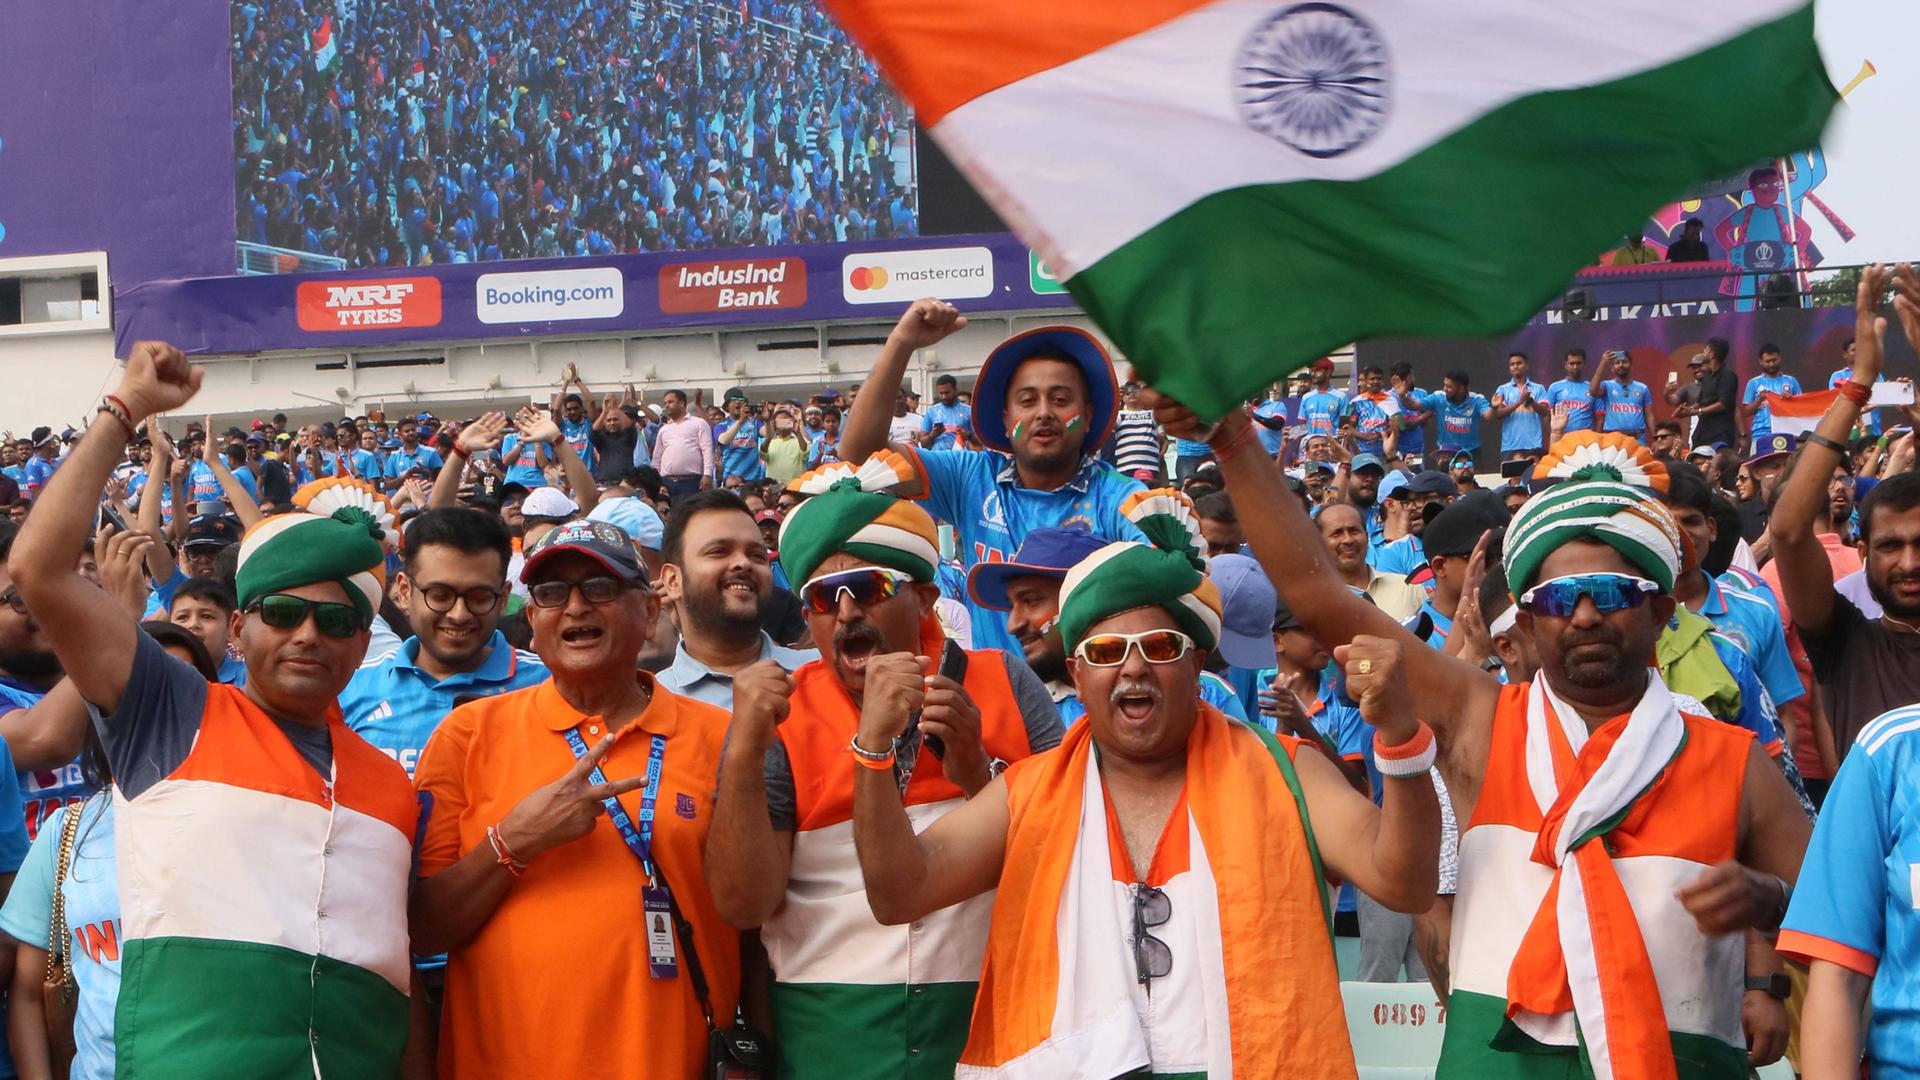 Blick auf indische Fans, sie jubeln und schwenken die indische Flagge.